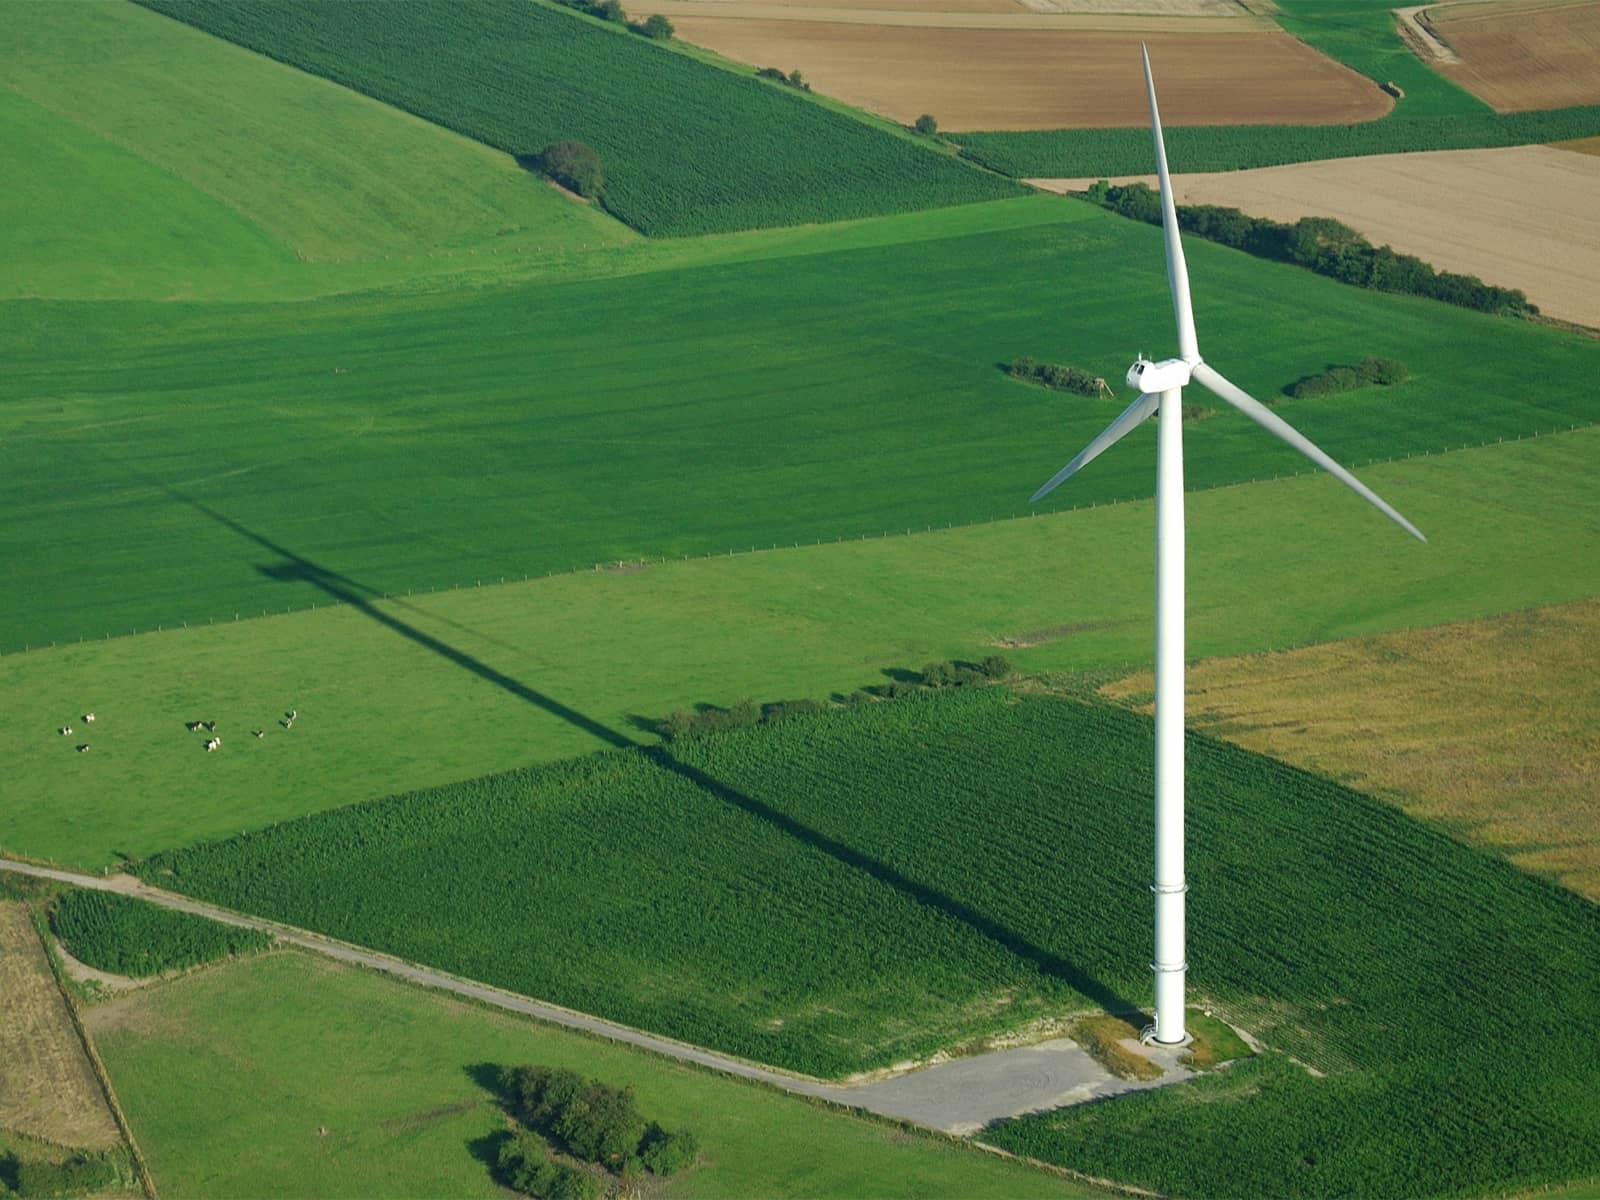 Vindmølle på mark. Hos EWII tilbyder vi også grøn byggestrøm - 100 % certificeret fra vedvarende energikilder.